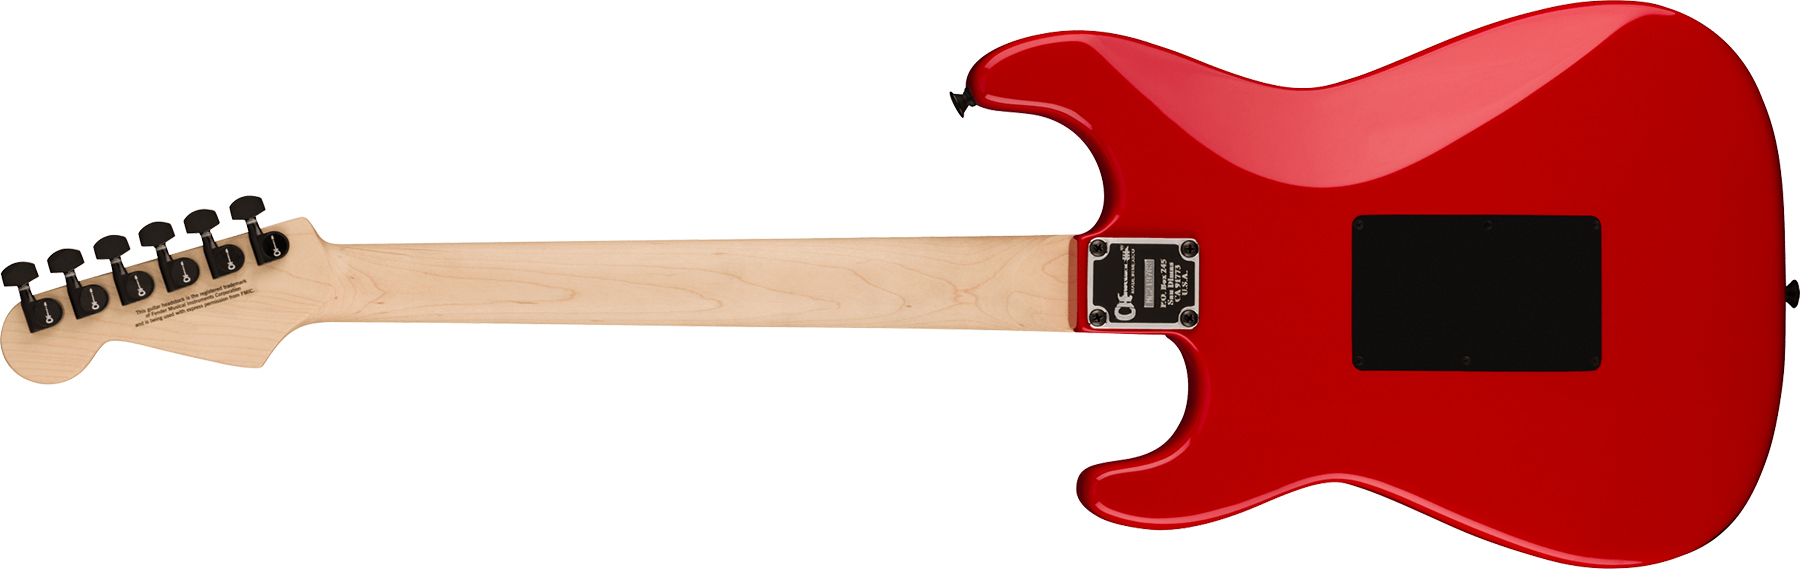 Charvel So-cal Style 1 Hss Fr E Pro-mod Seymour Duncan Eb - Ferrari Red - Elektrische gitaar in Str-vorm - Variation 1